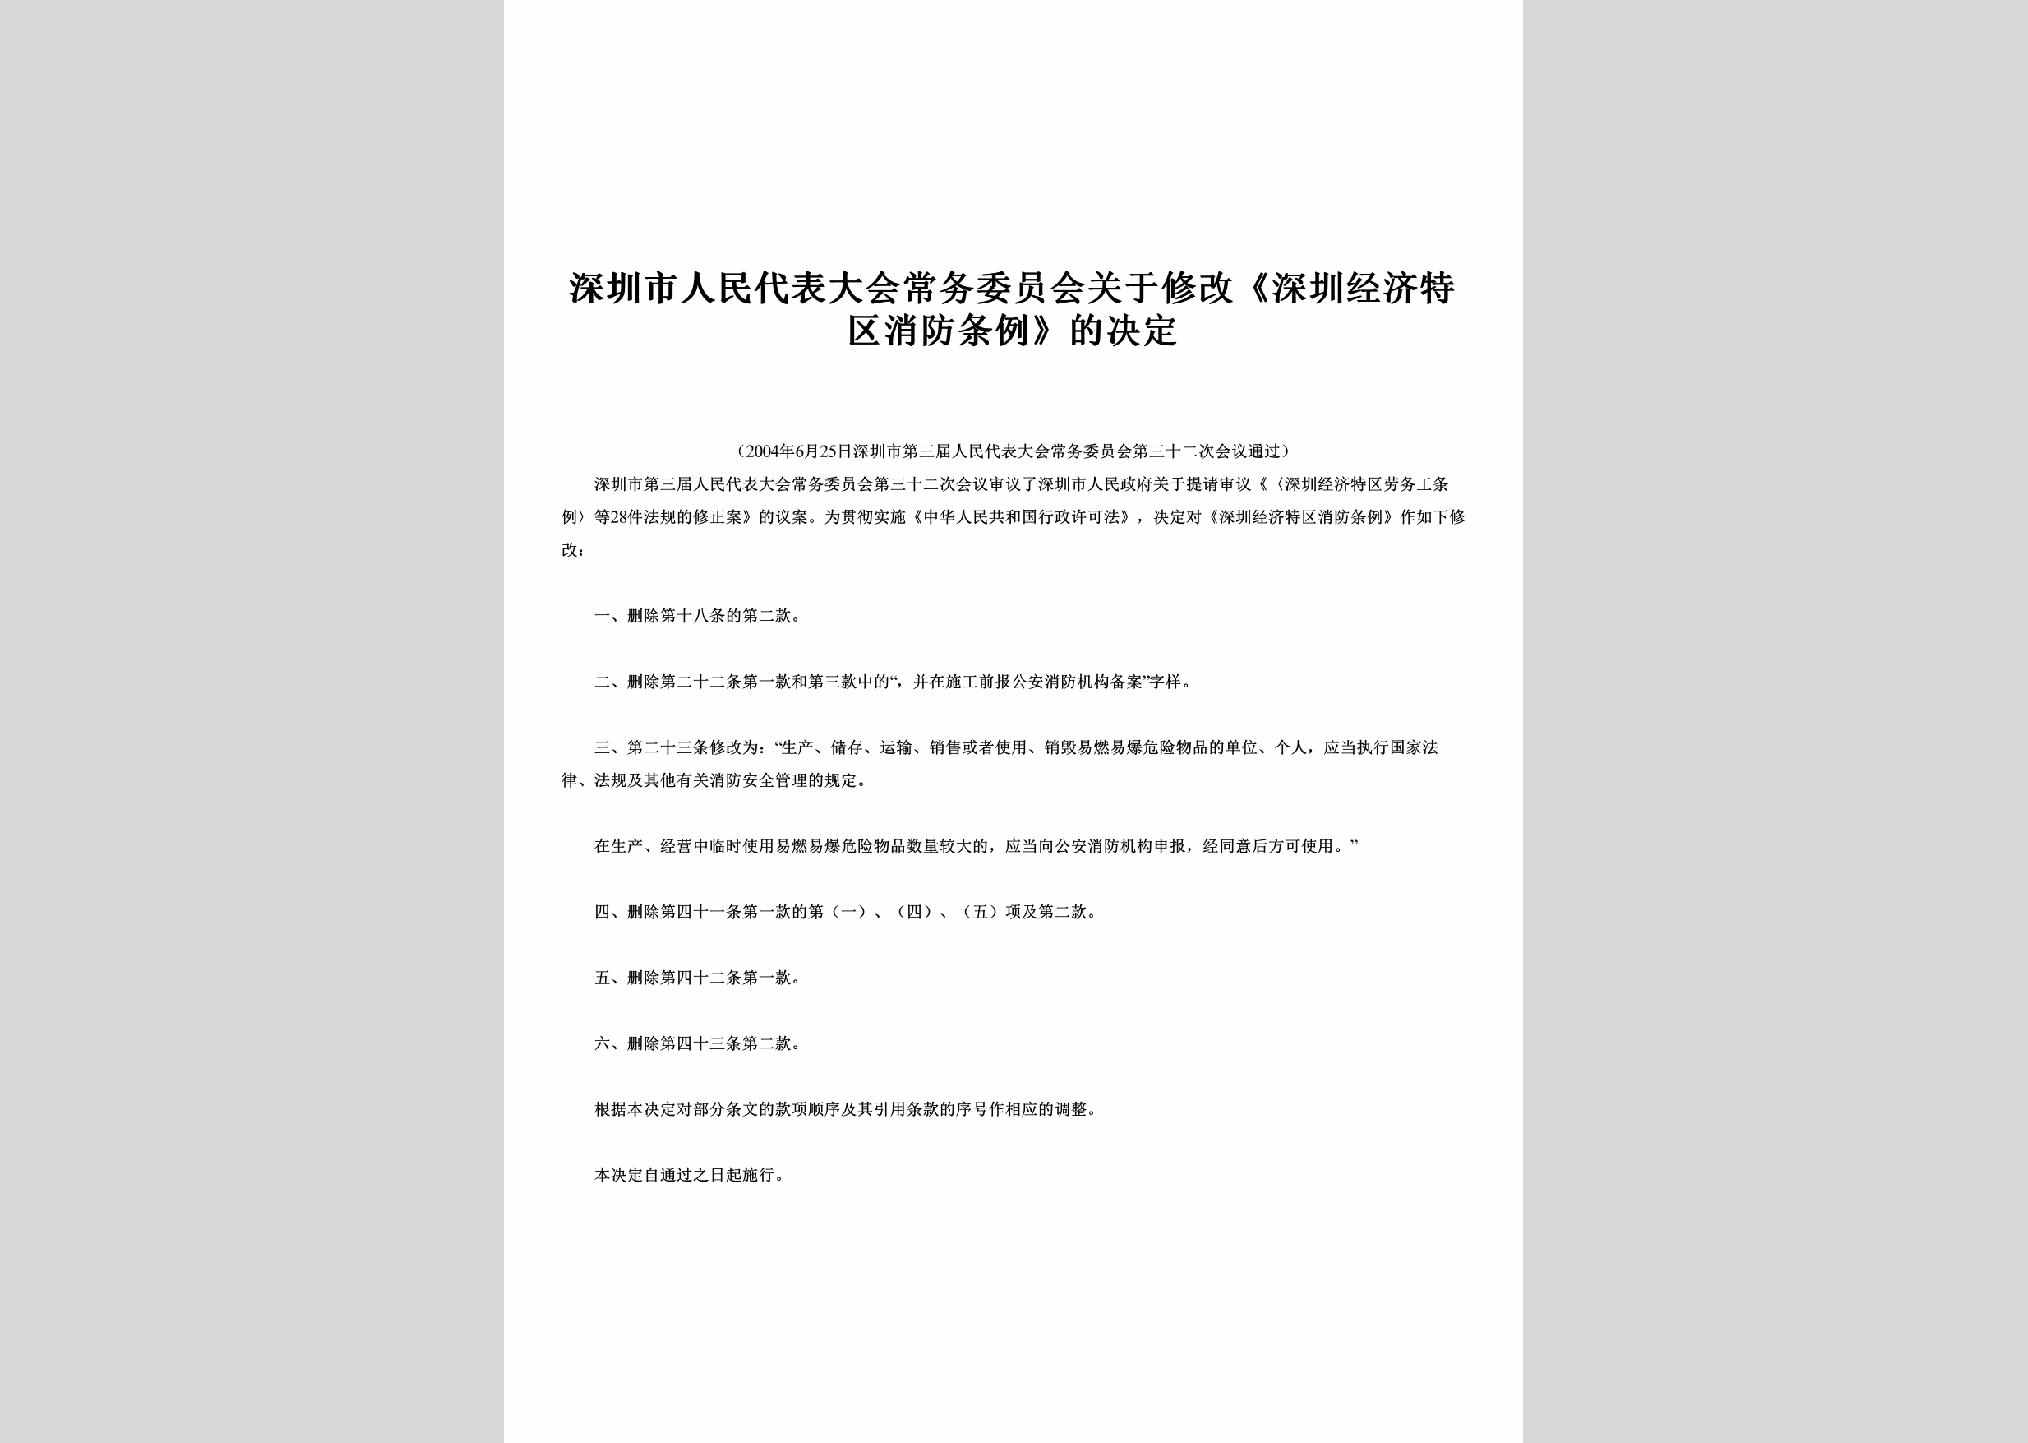 GD-XFTLJD-2004：关于修改《深圳经济特区消防条例》的决定